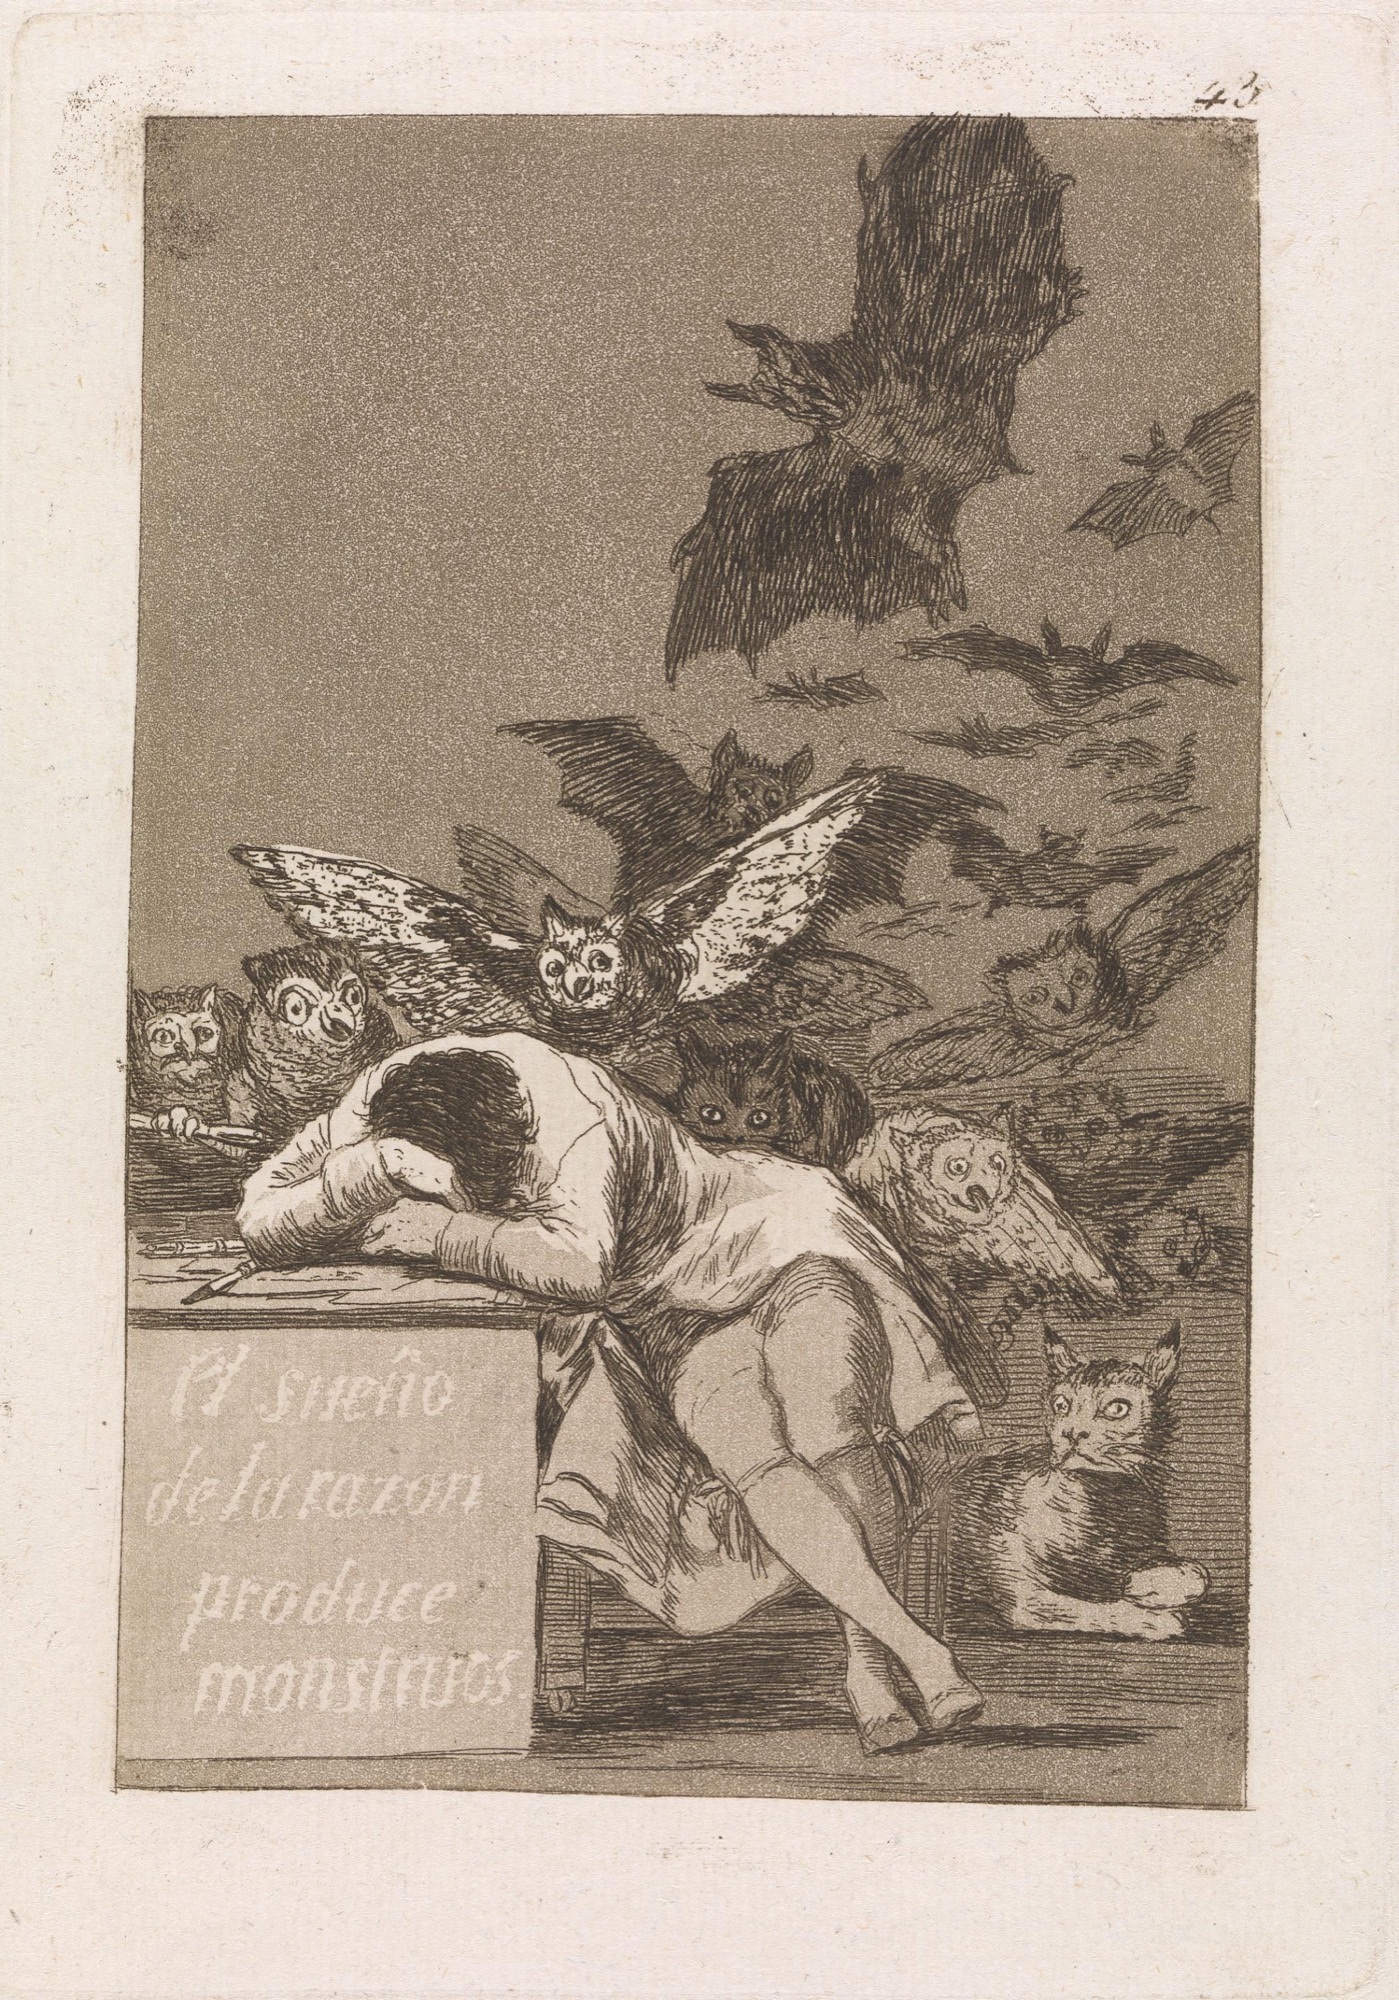 Francisco Goya y Lucientes, <em>The sleep of reason produces monsters (El sueño de la razón produce monstruos)</em>, plate 43 from <em>Los Caprichos (The Caprices)</em> series (1797–98), published 1799.